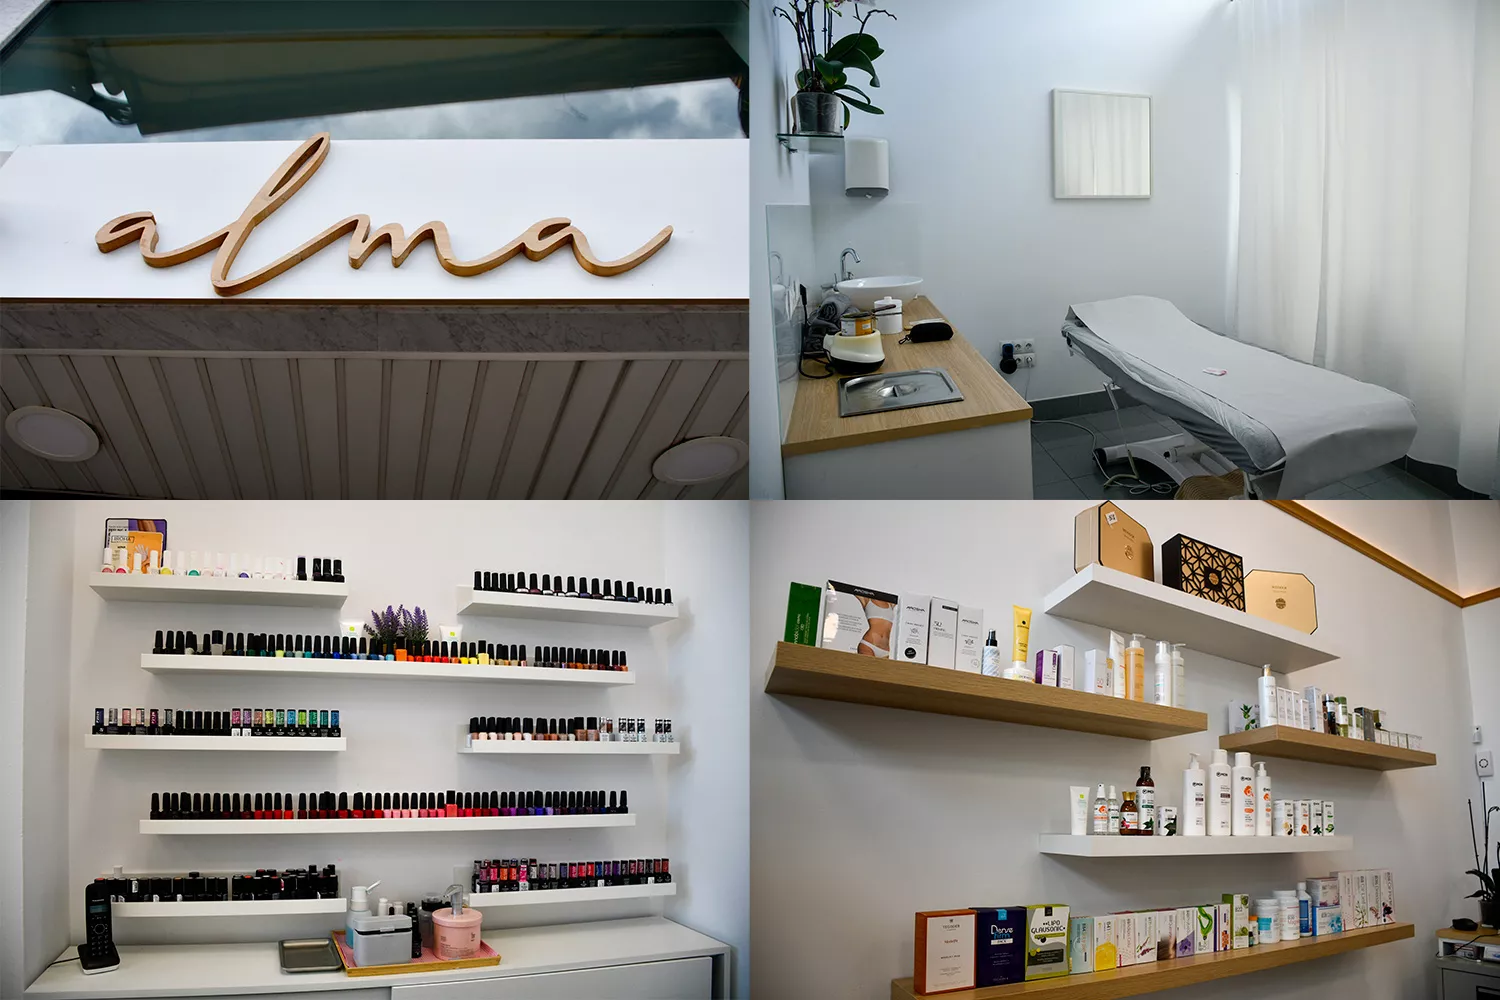 El centro de estética 'Alma' celebra su quinto aniversario con descuentos en tratamientos faciales y productos